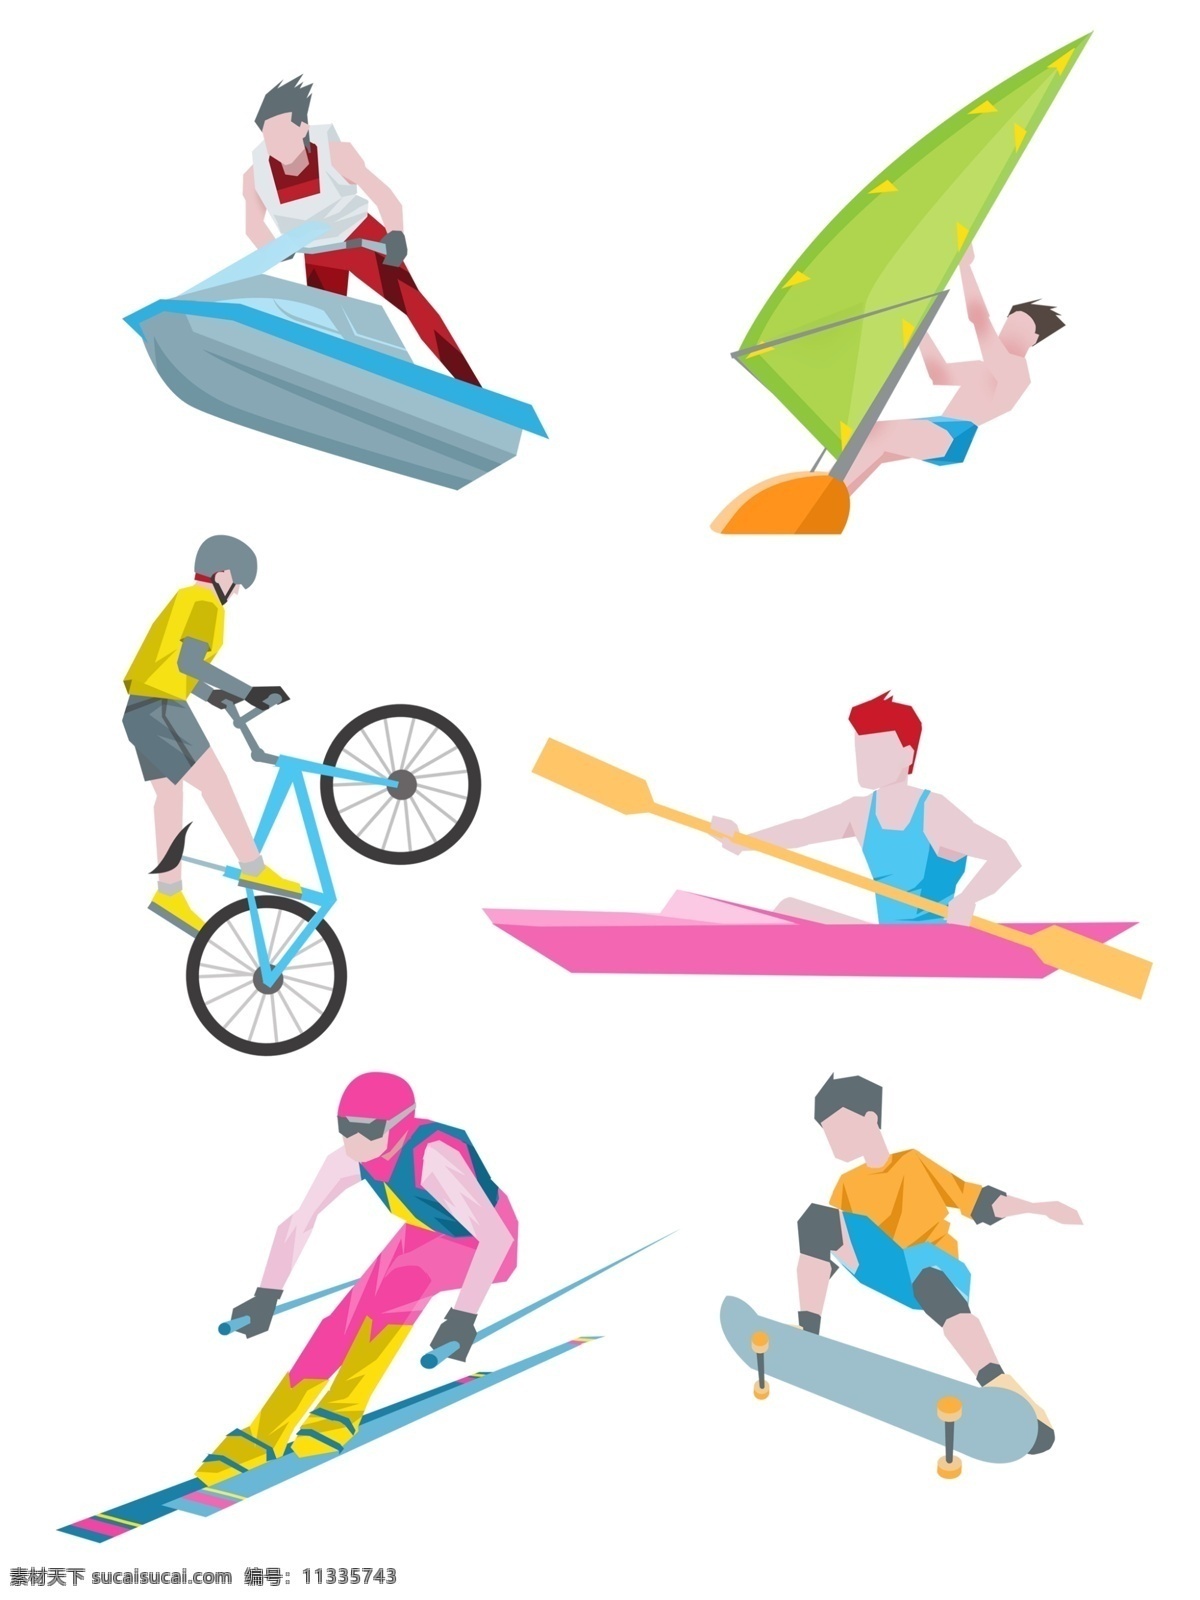 商用 速度 感 欧美 扁平 风 人物 运动 套 图 帆船 滑雪 体育 飞艇 划艇 骑行 单车 骑单车 划船 滑板 套图 扁平风 欧美扁平风